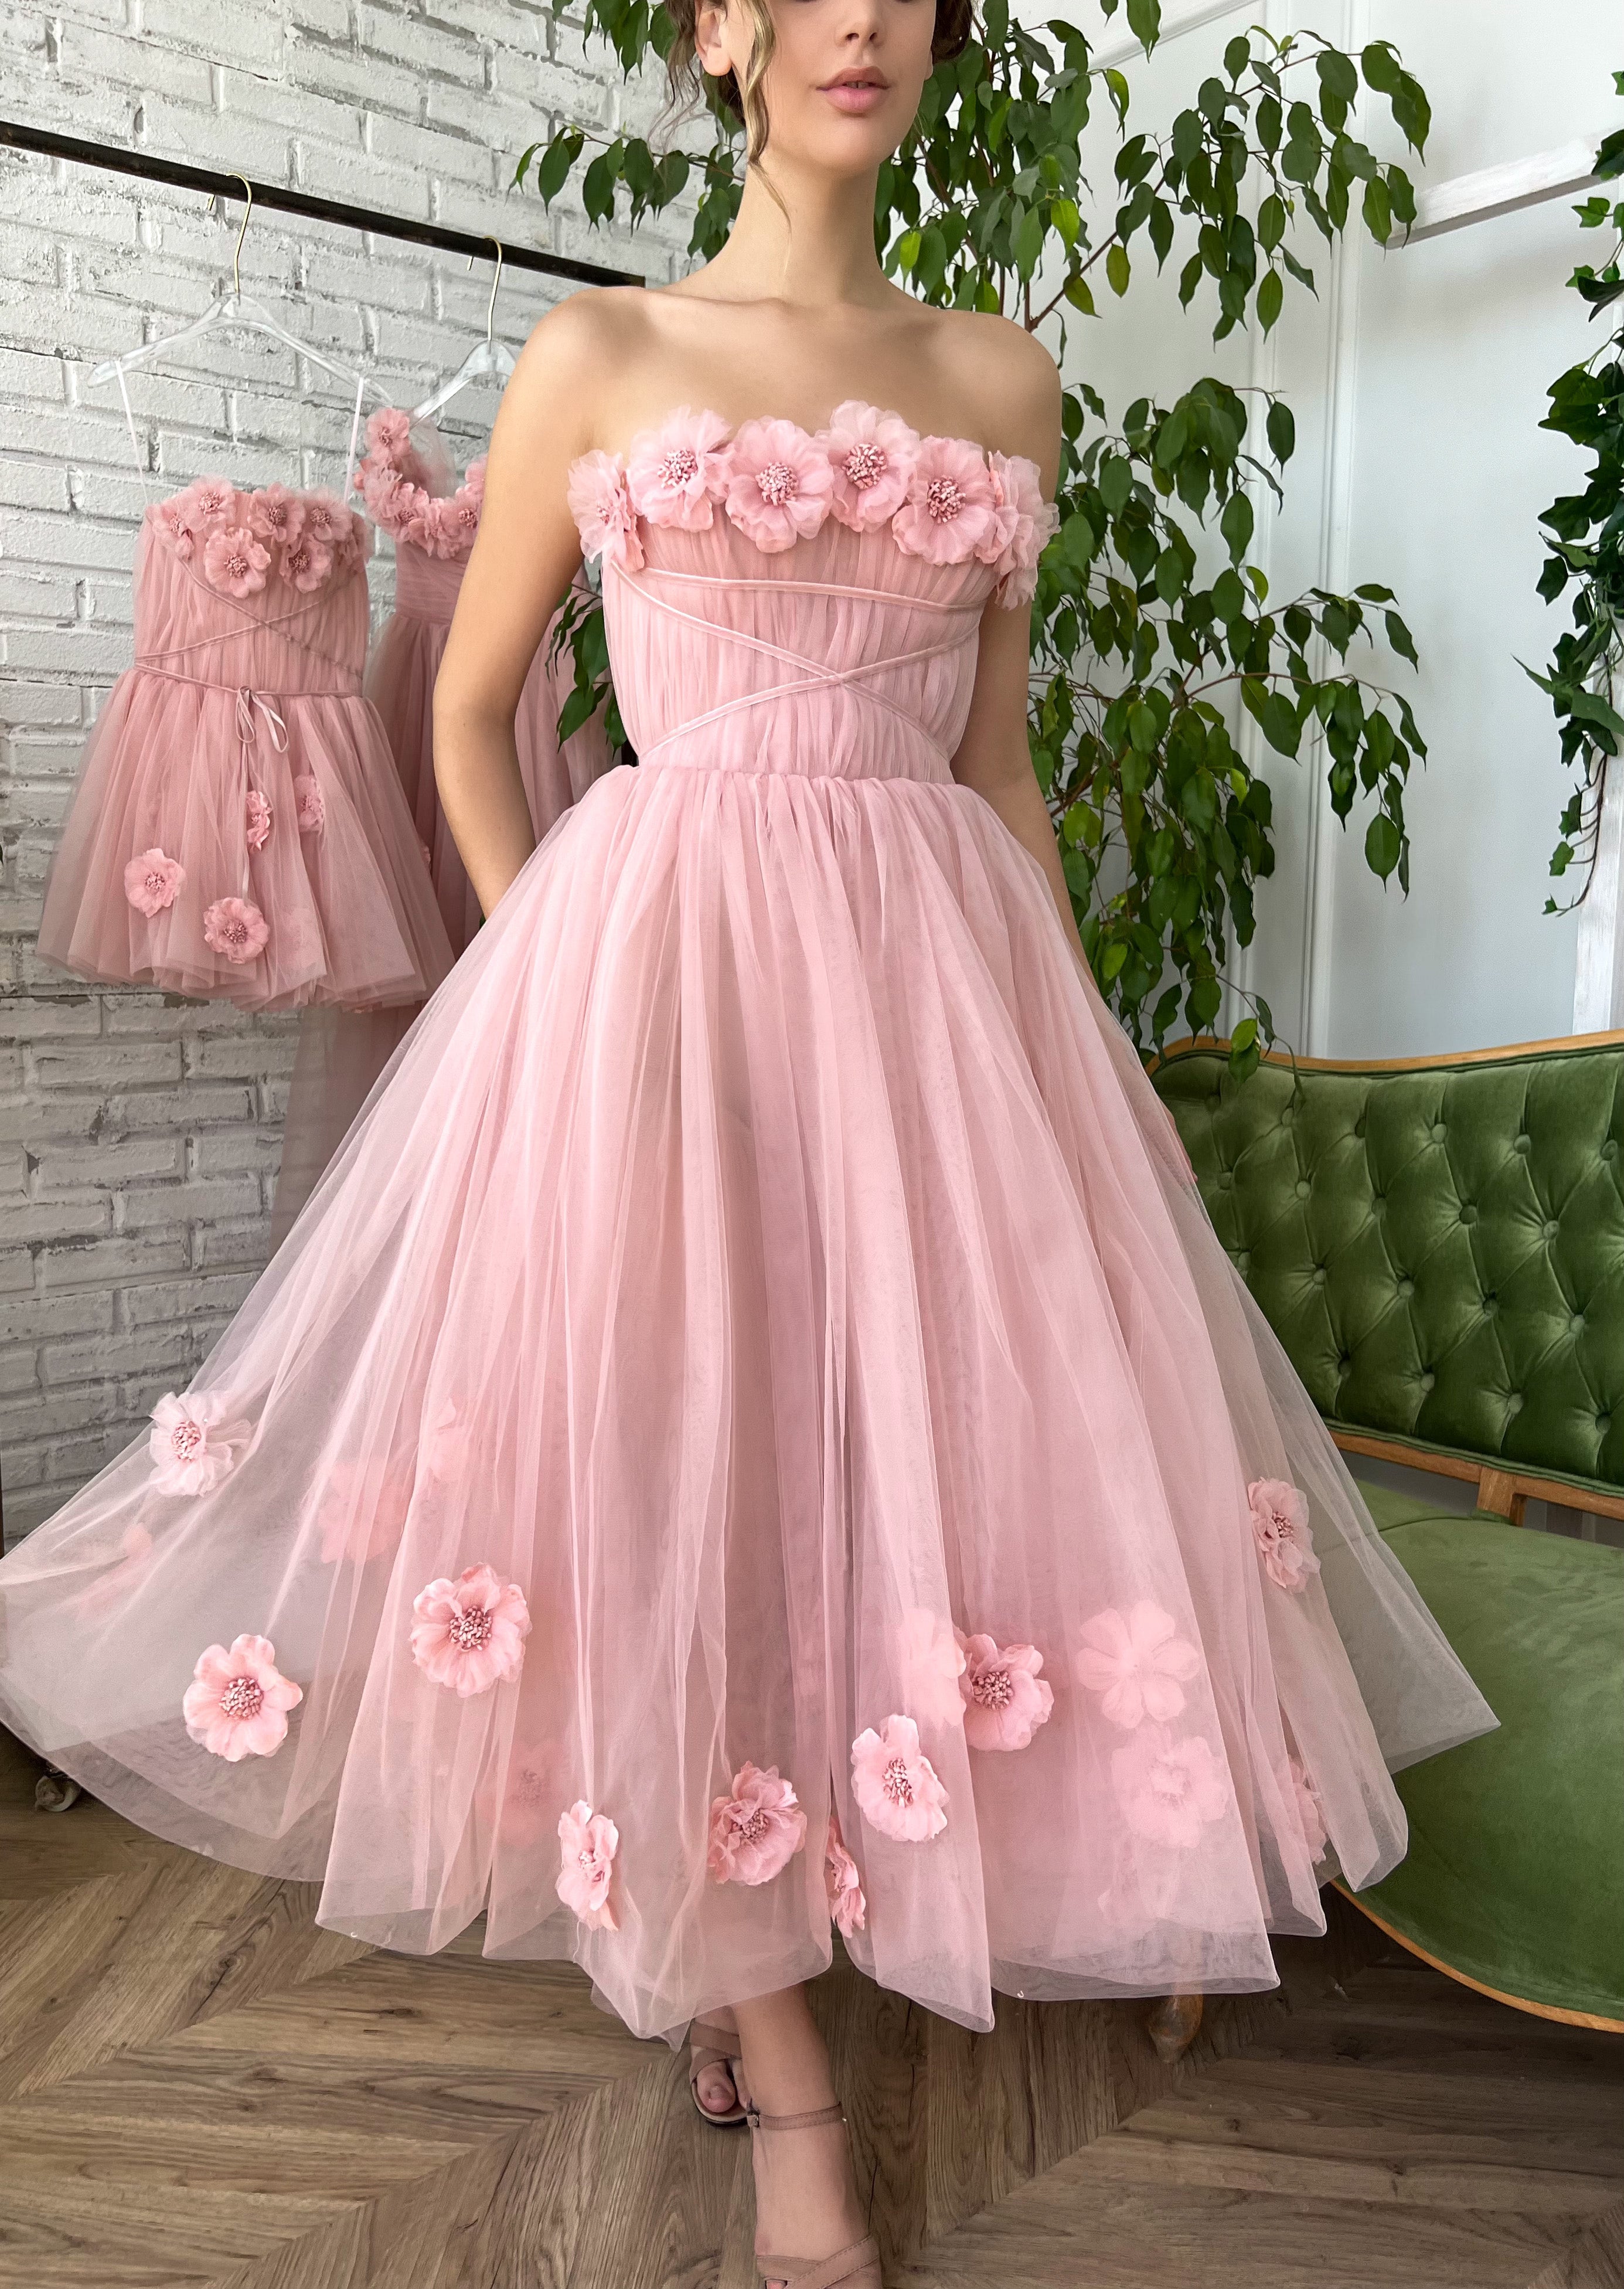 Rose Princess Dress - Pink Blush